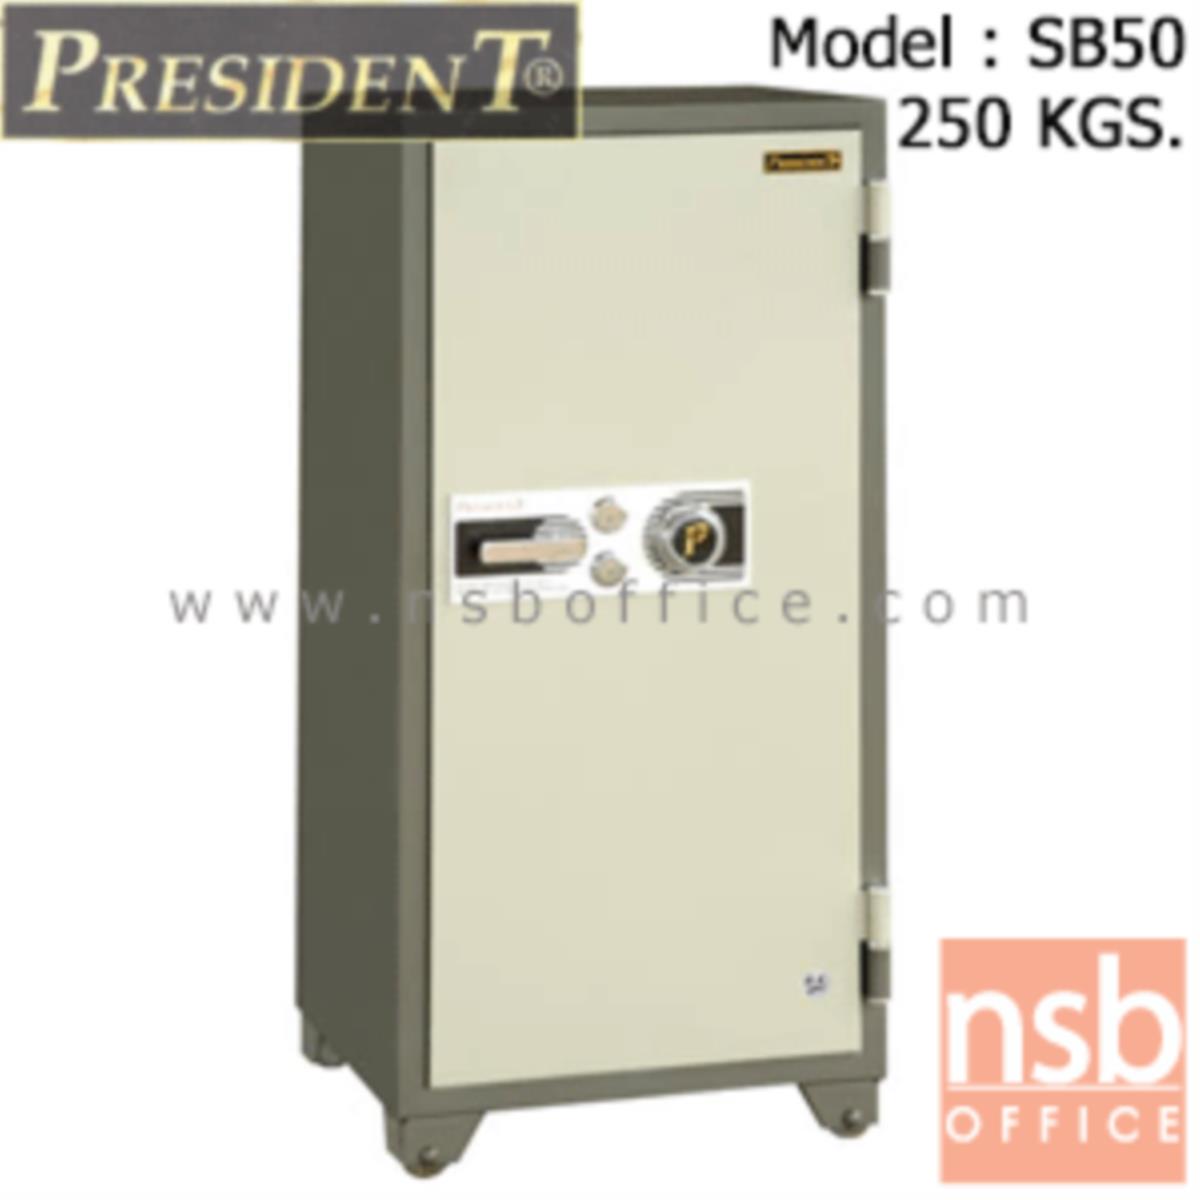 F05A037:ตู้เซฟนิรภัยชนิดหมุน 250 กก.   รุ่น PRESIDENT-SB50 มี 2 กุญแจ 1 รหัส (รหัสใช้หมุนหน้าตู้)